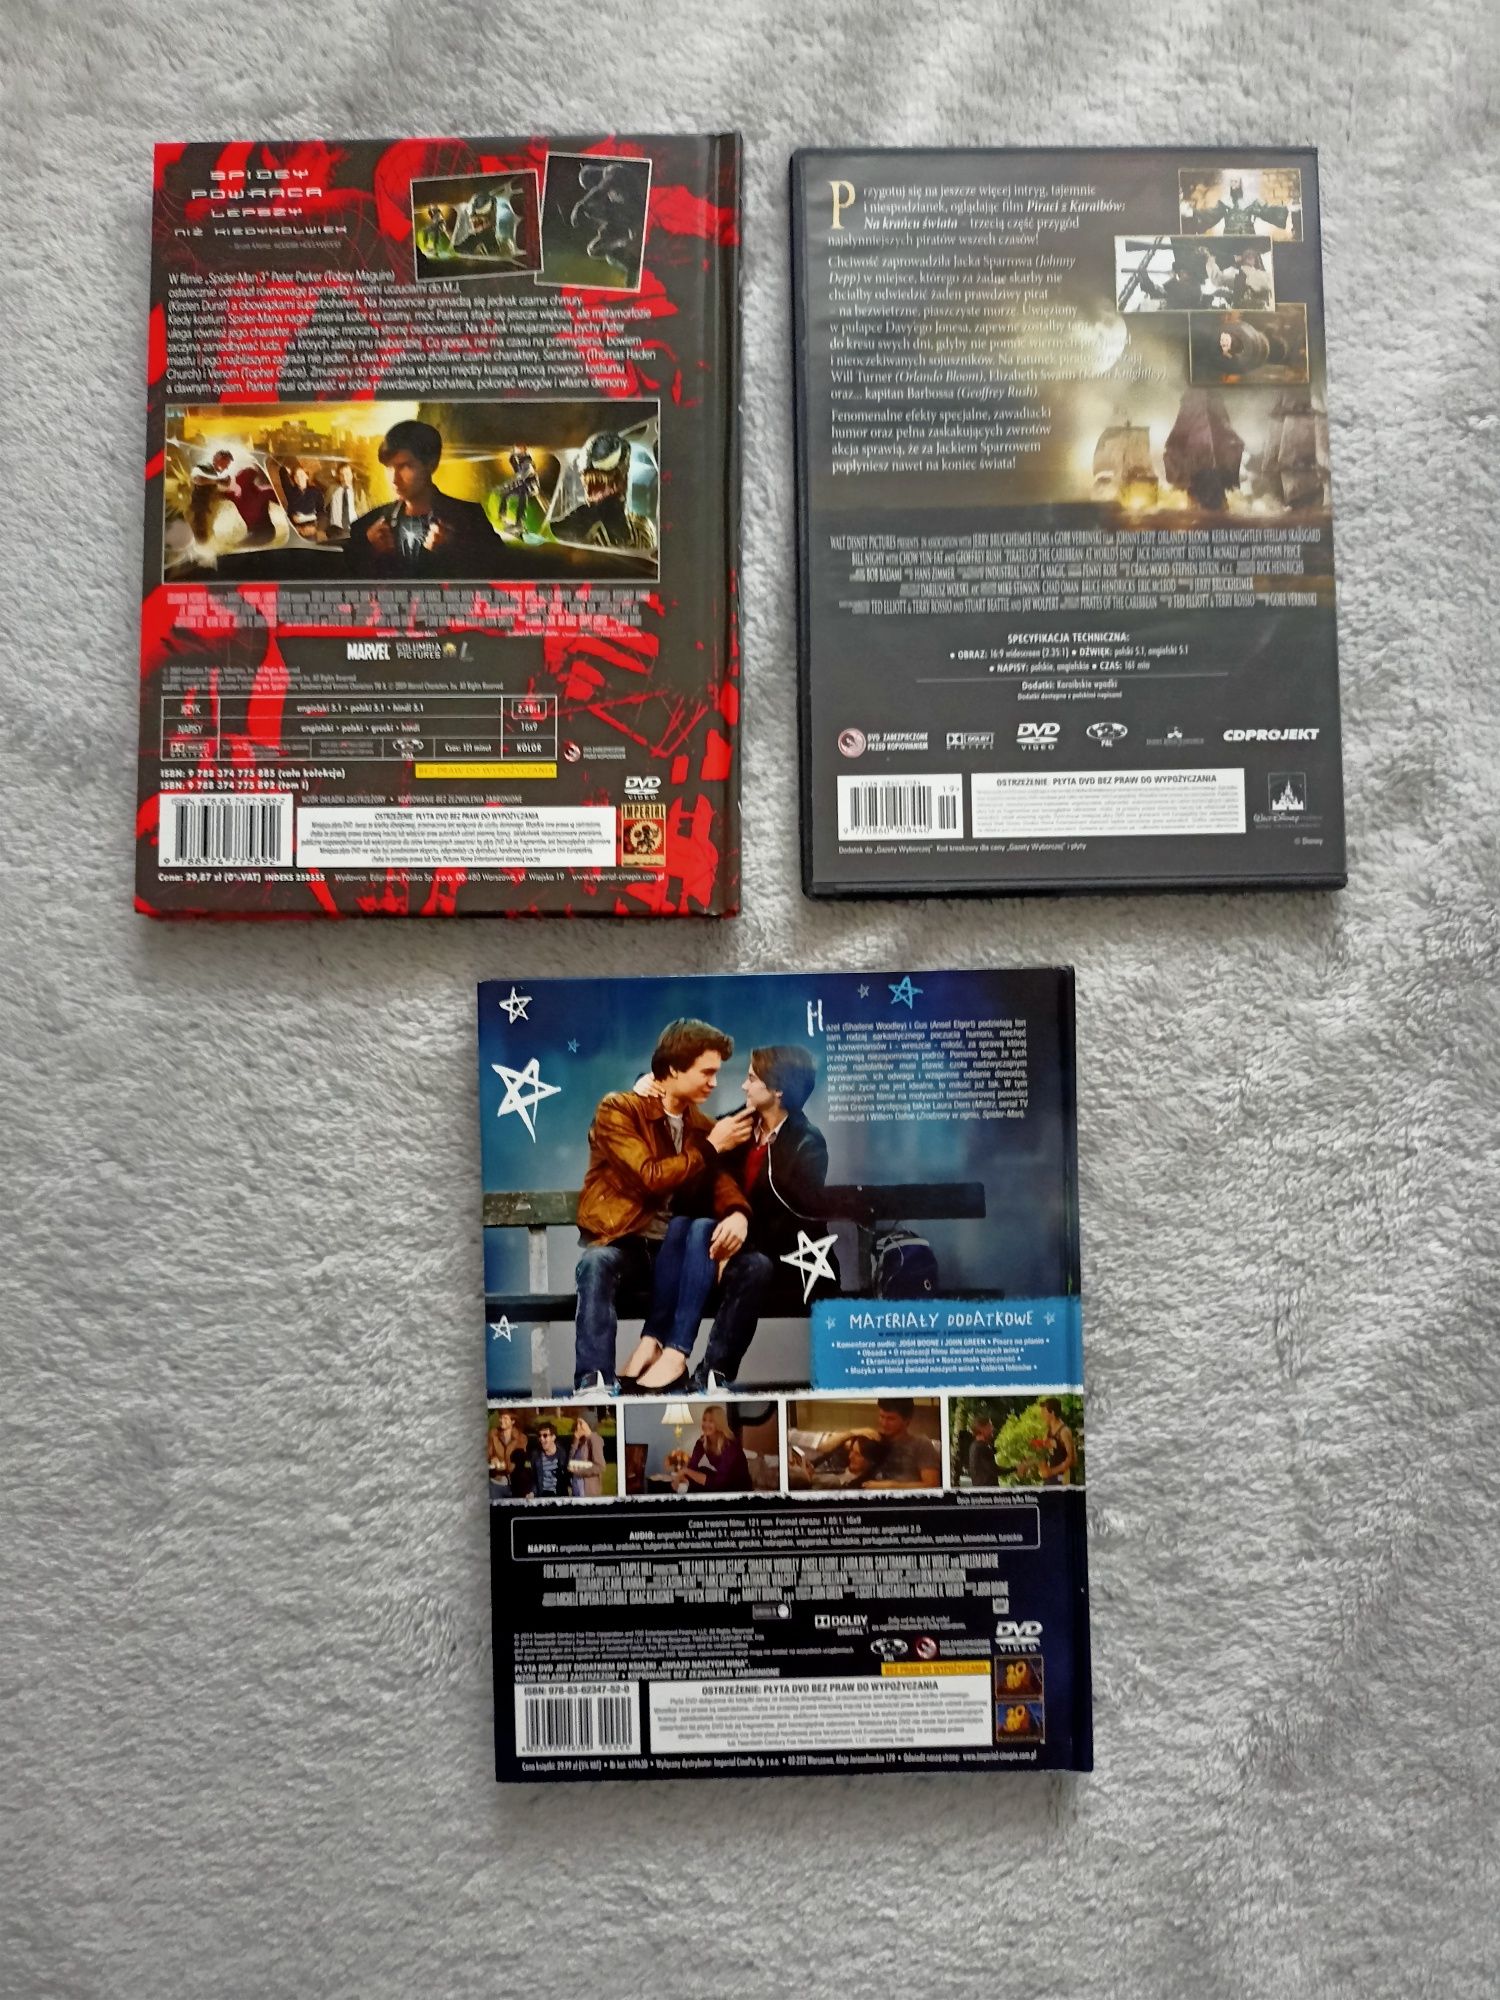 Filmy na płytach DVD